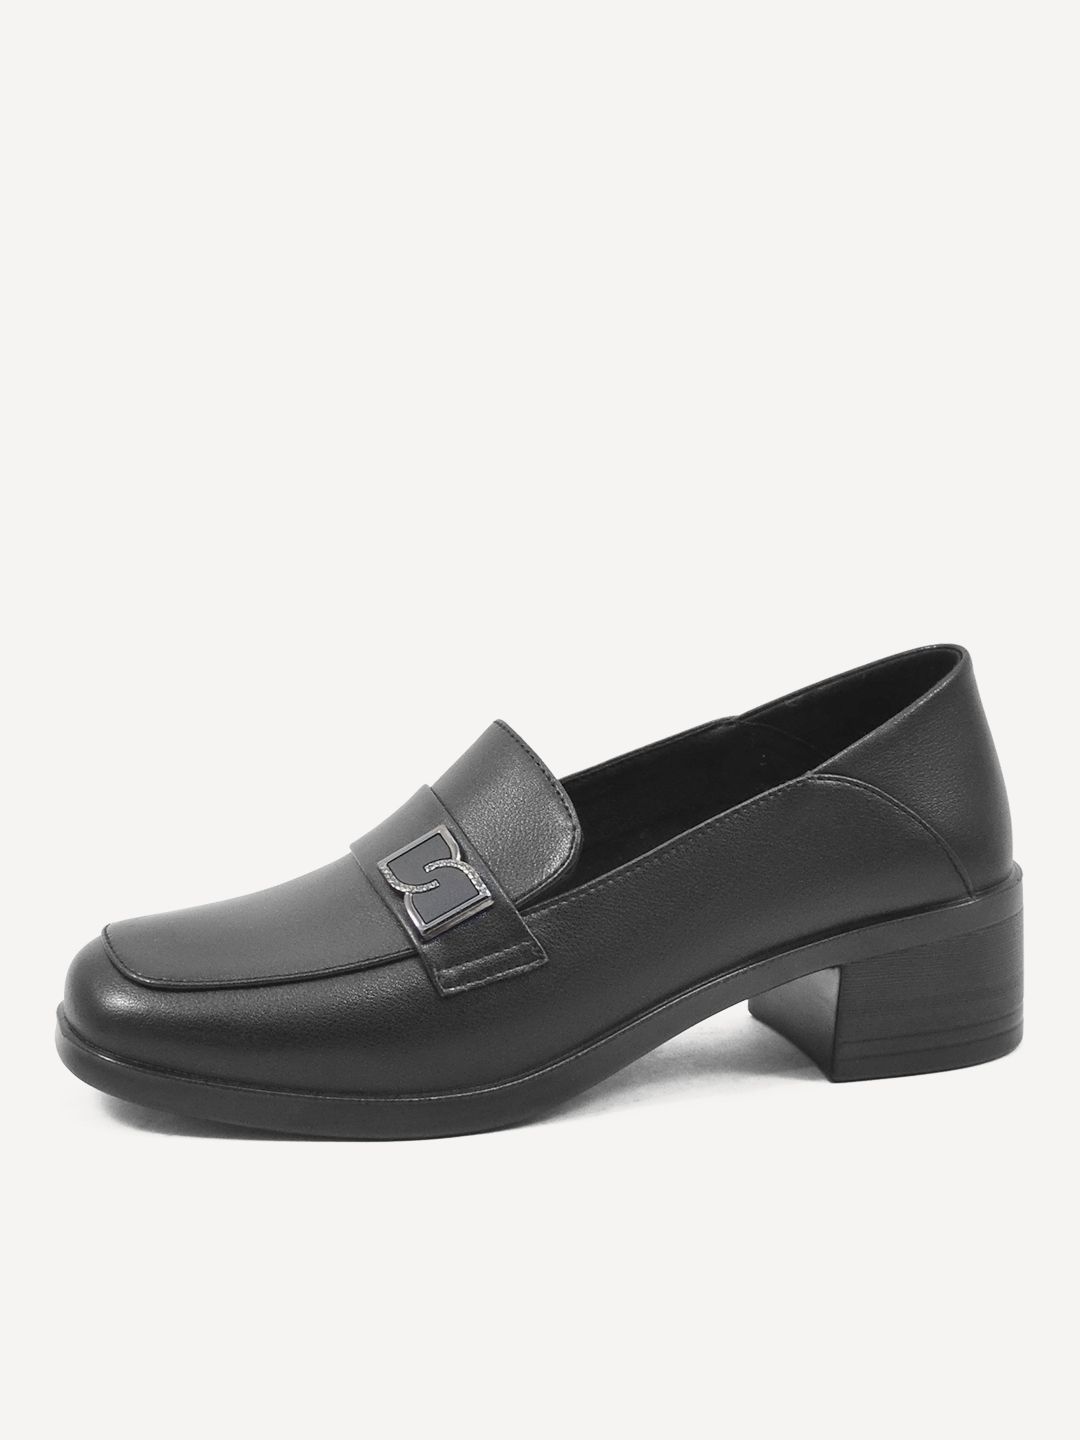 Туфли женские Baden ME301-030 черные 38 RU